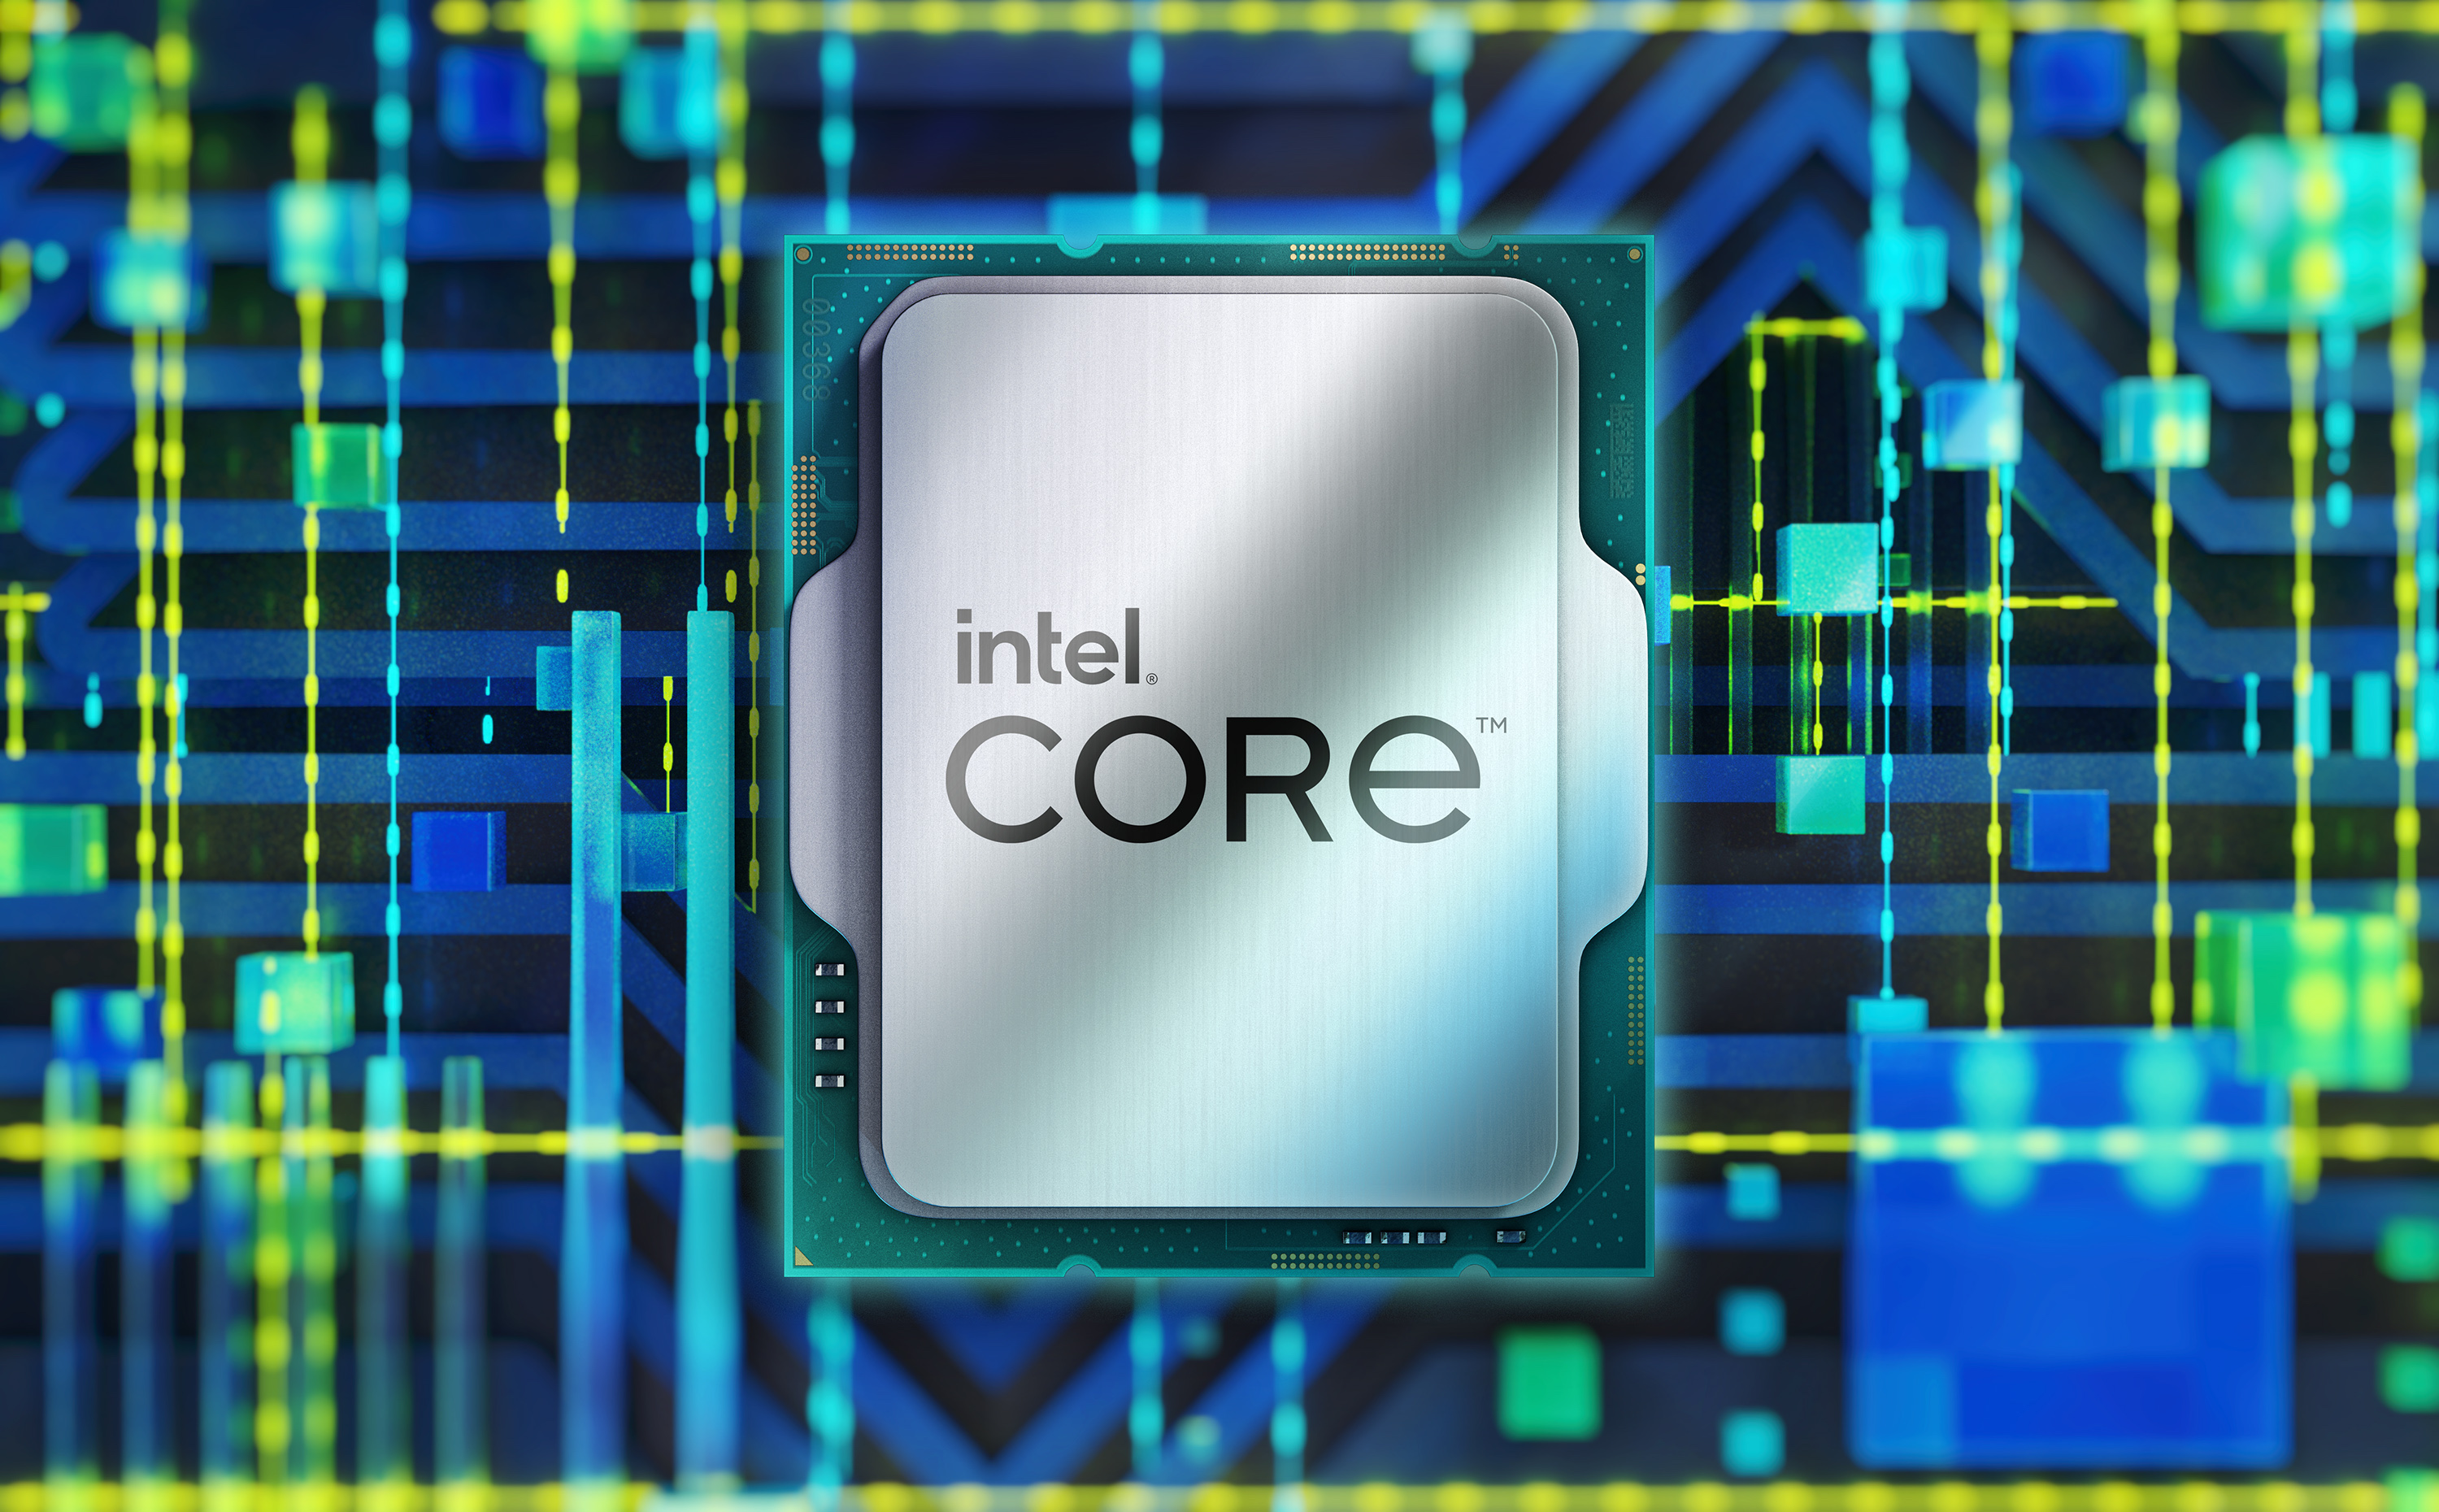 Procesor Intel Core i7-12700F je speciln uren pro zkladn desky s patic LGA1700 z ady Intel 600 Series, kdy se pyn 12 jdry s maximlnm taktem a 4,9 GHz diky TB 3.0 technologii.